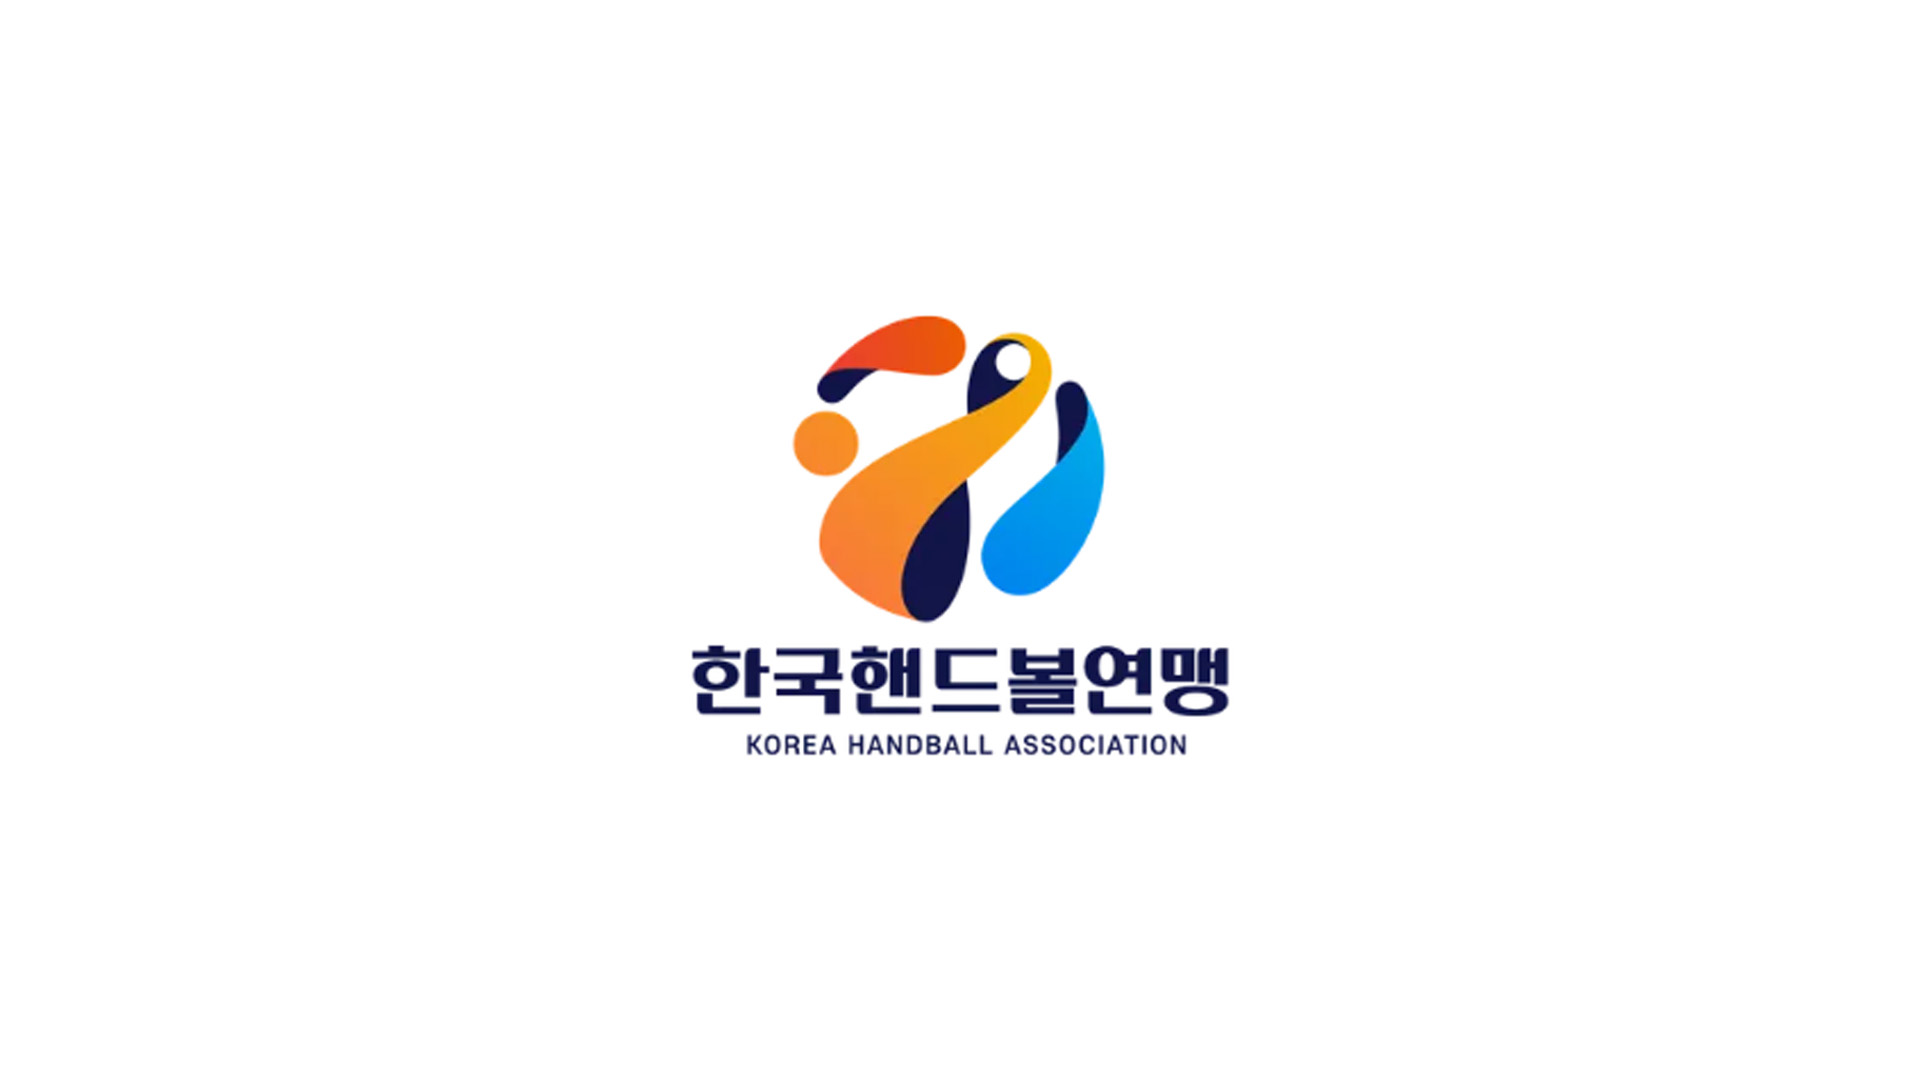 핸드볼리그 logo